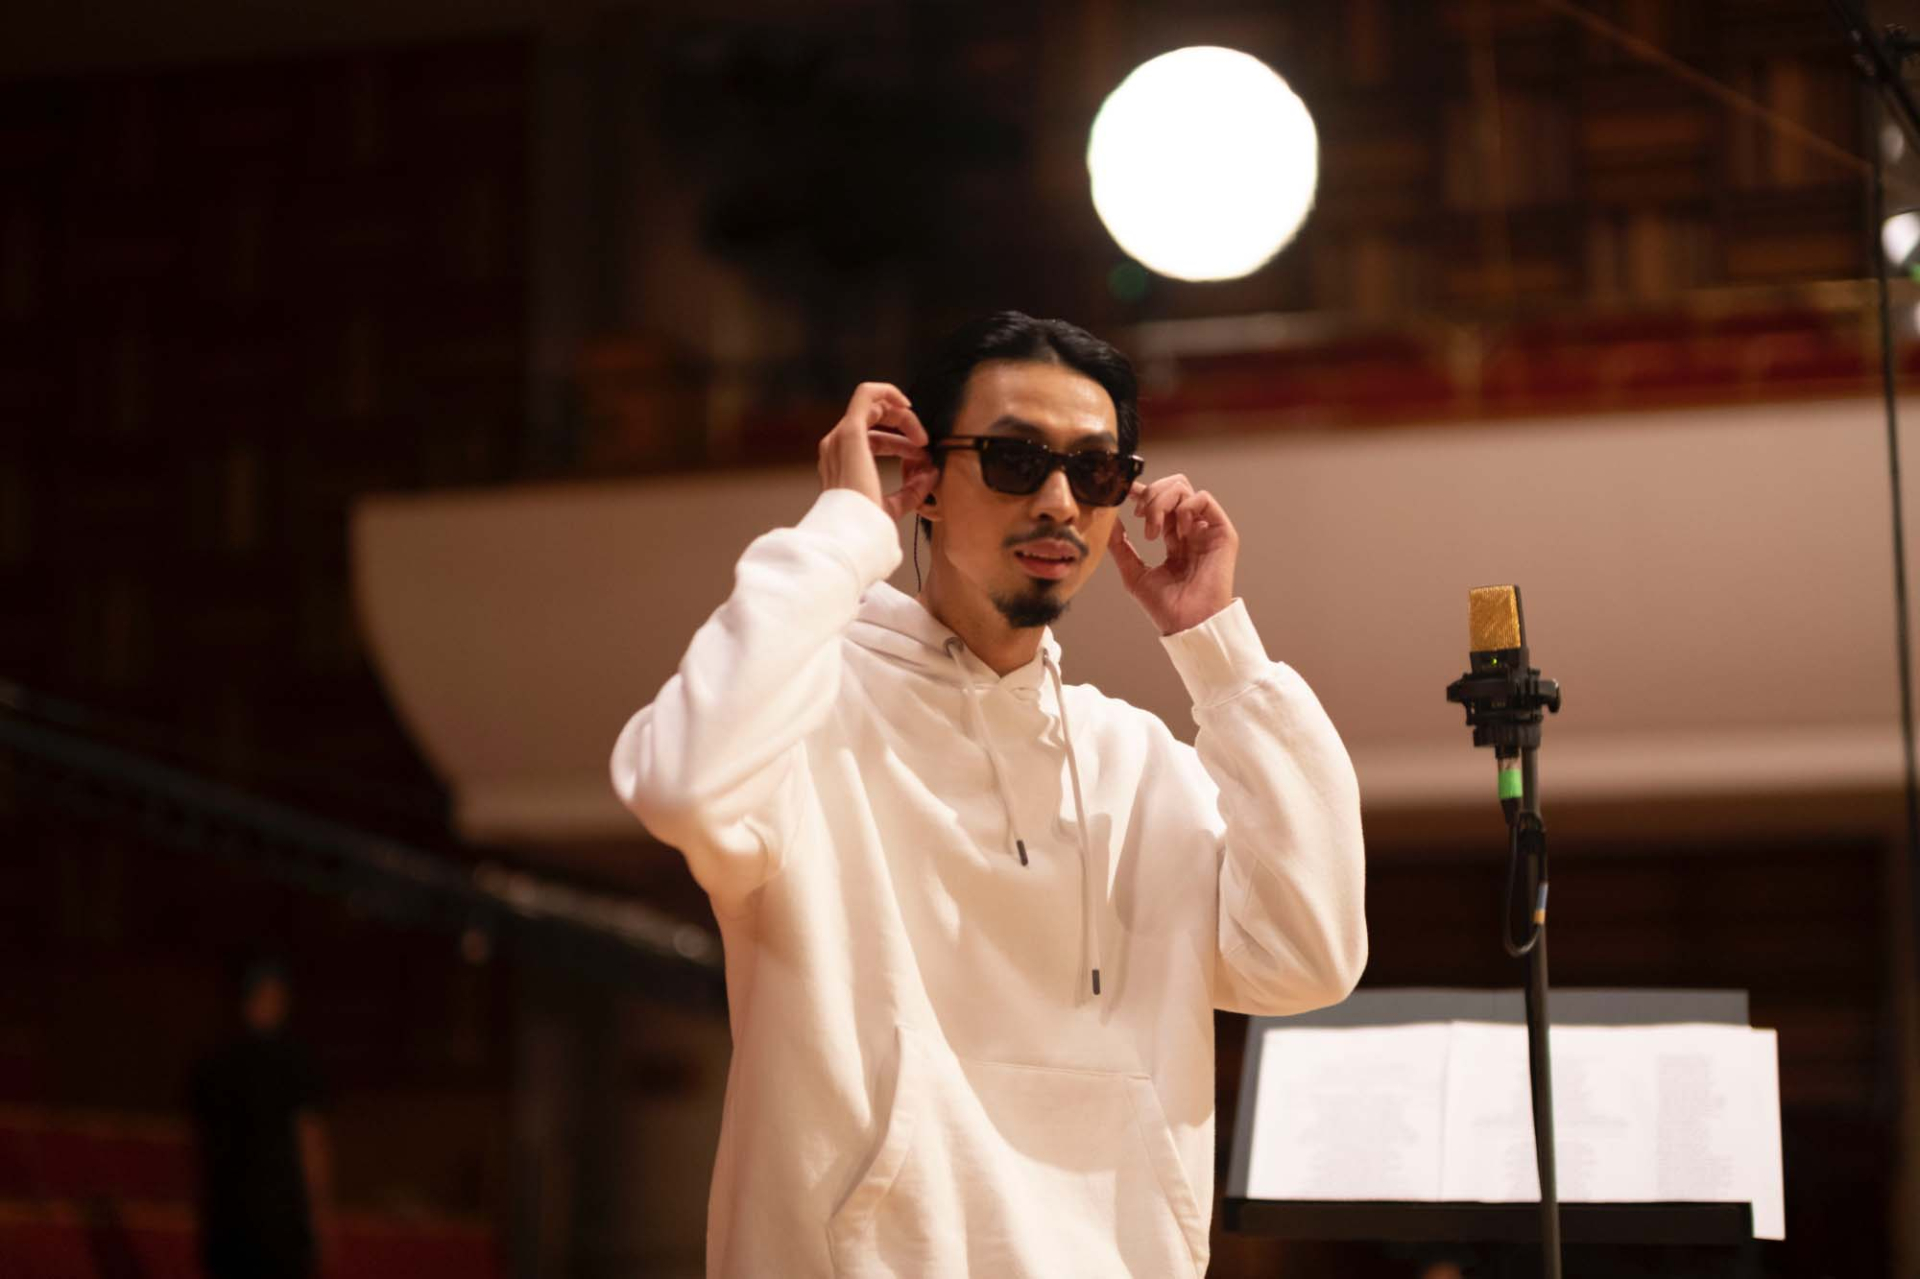 Đen kết hợp hài hoà Rap, Hip-hop và nhạc giao hưởng trong album “dongvui harmony' - ảnh 1